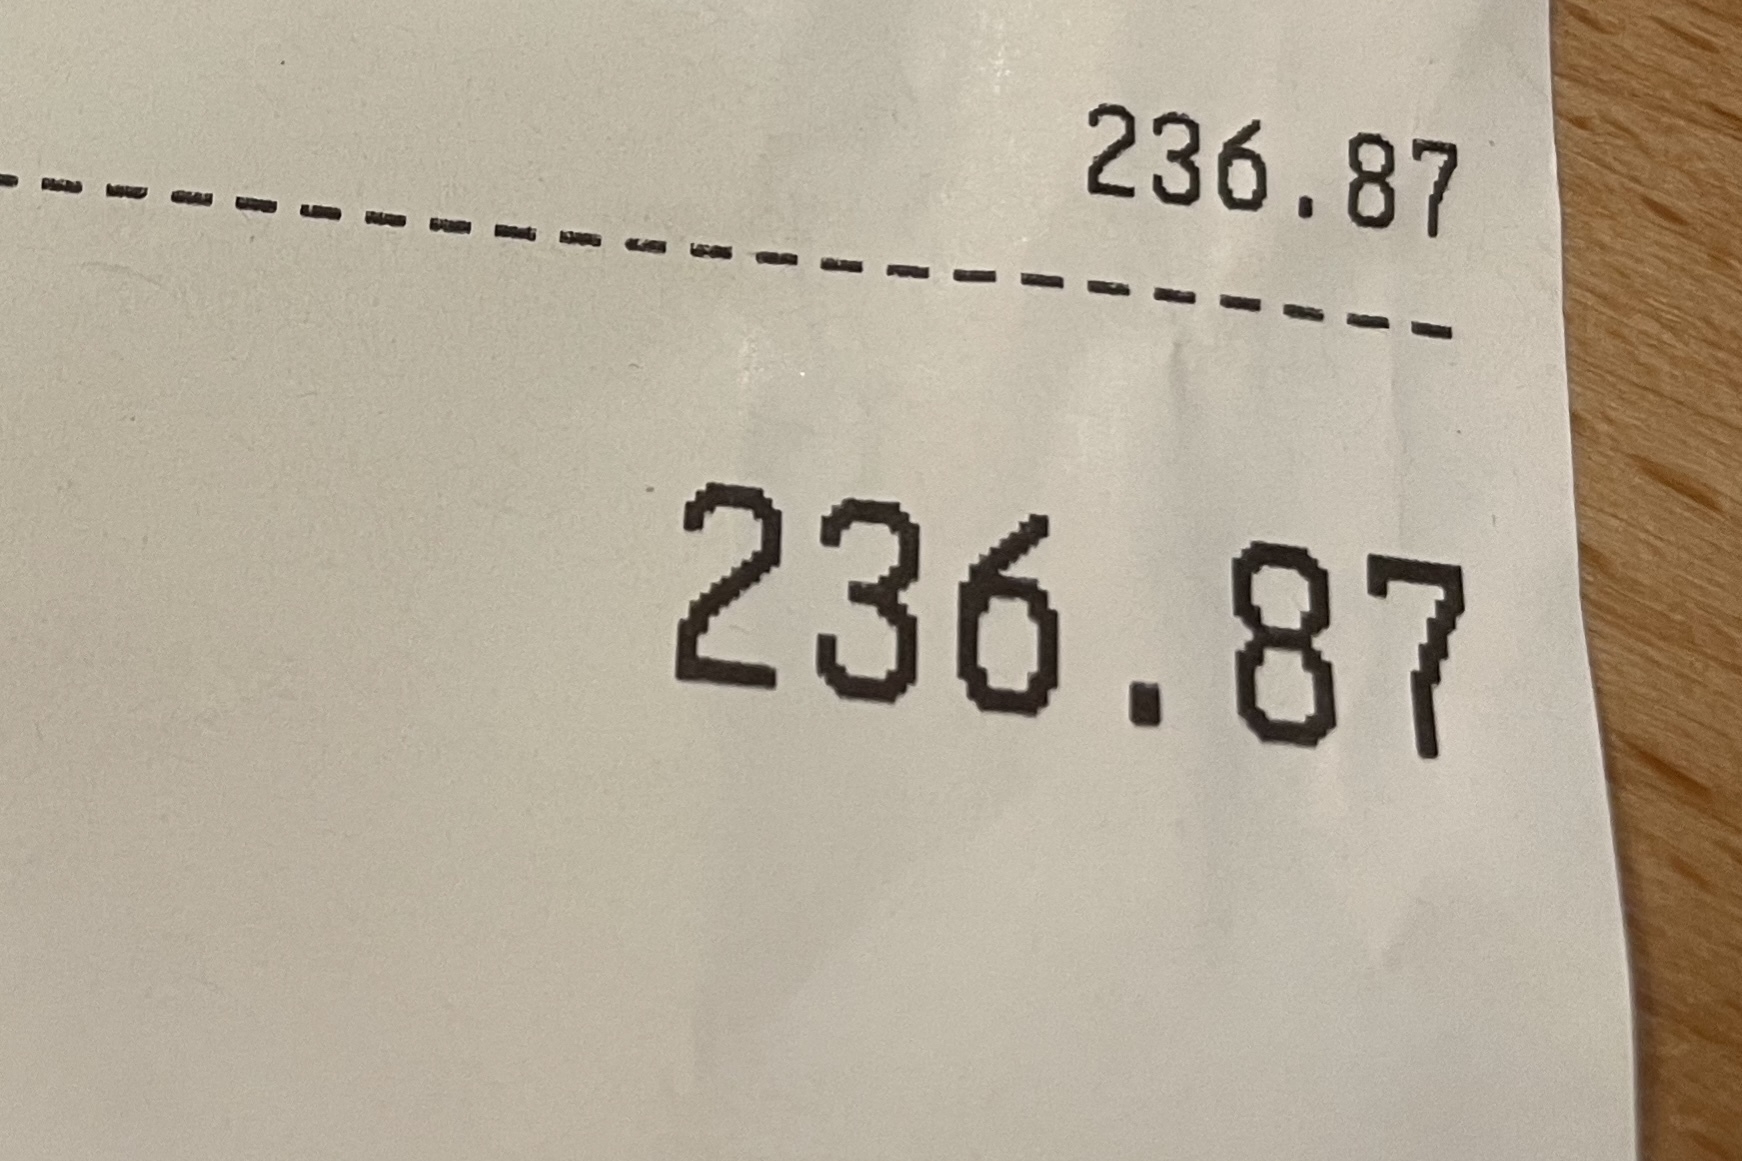 €236.87